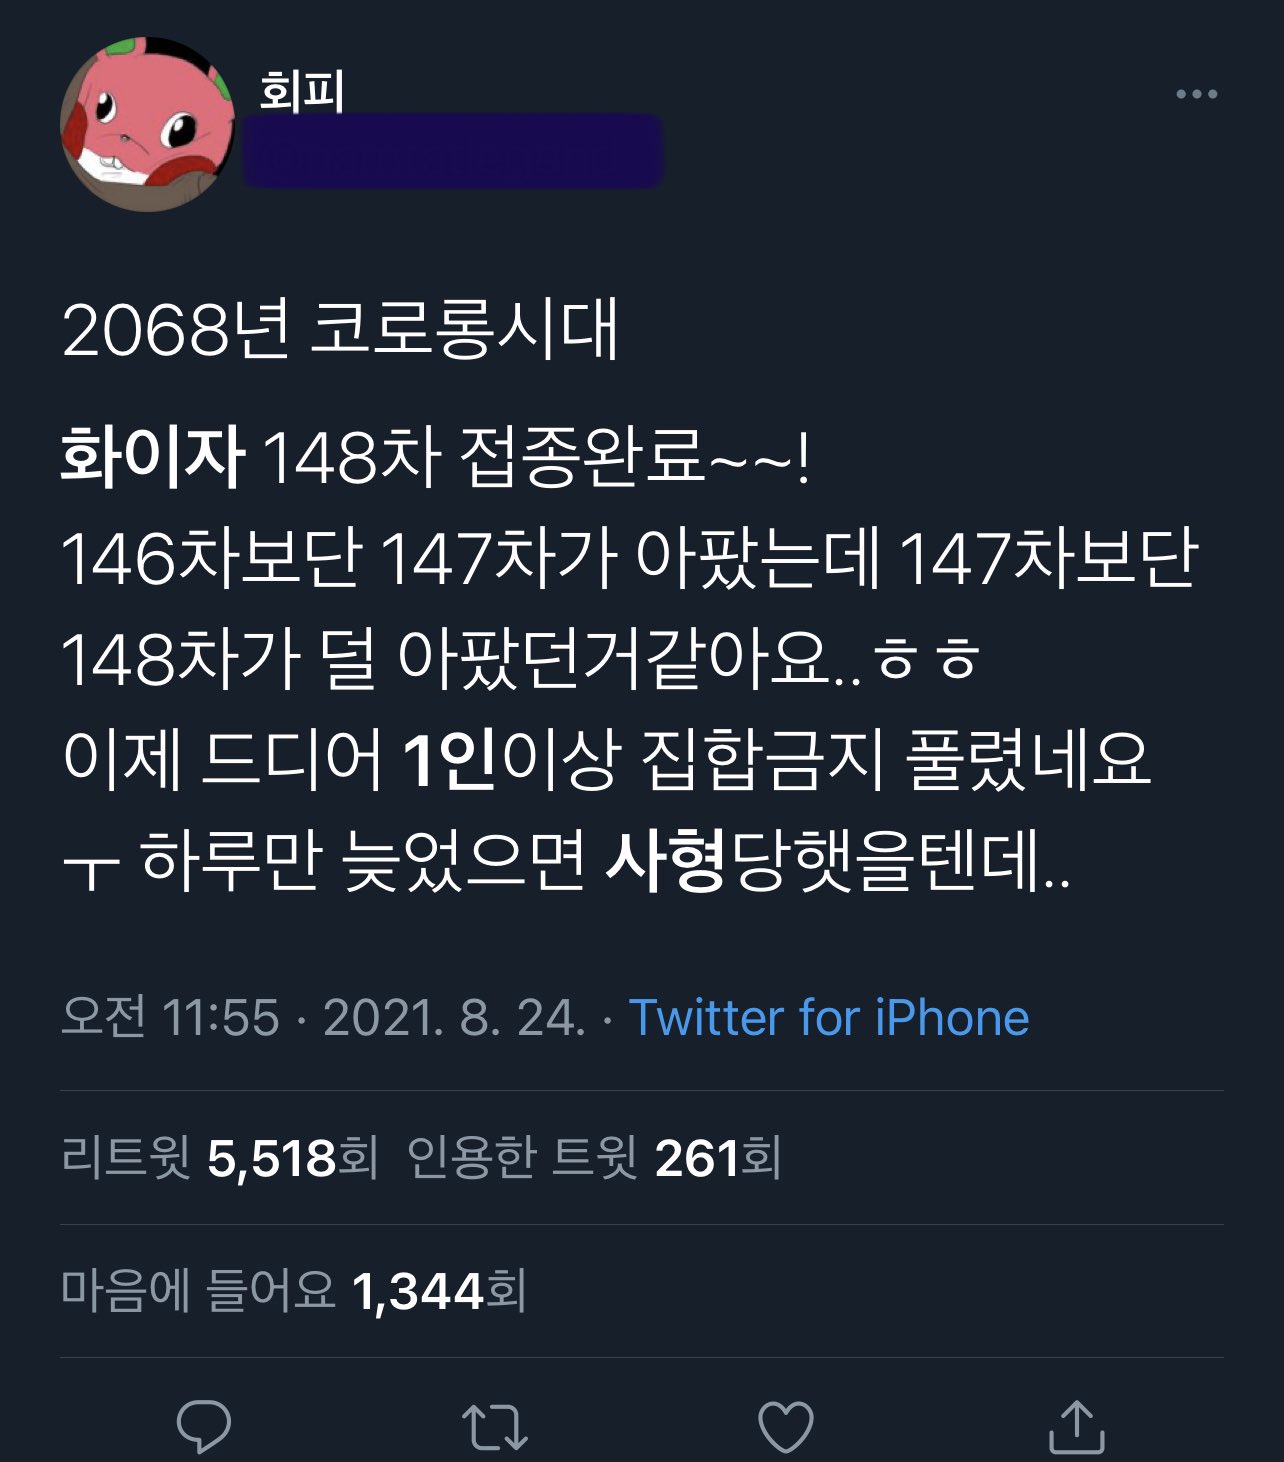 2068年の韓国の状況